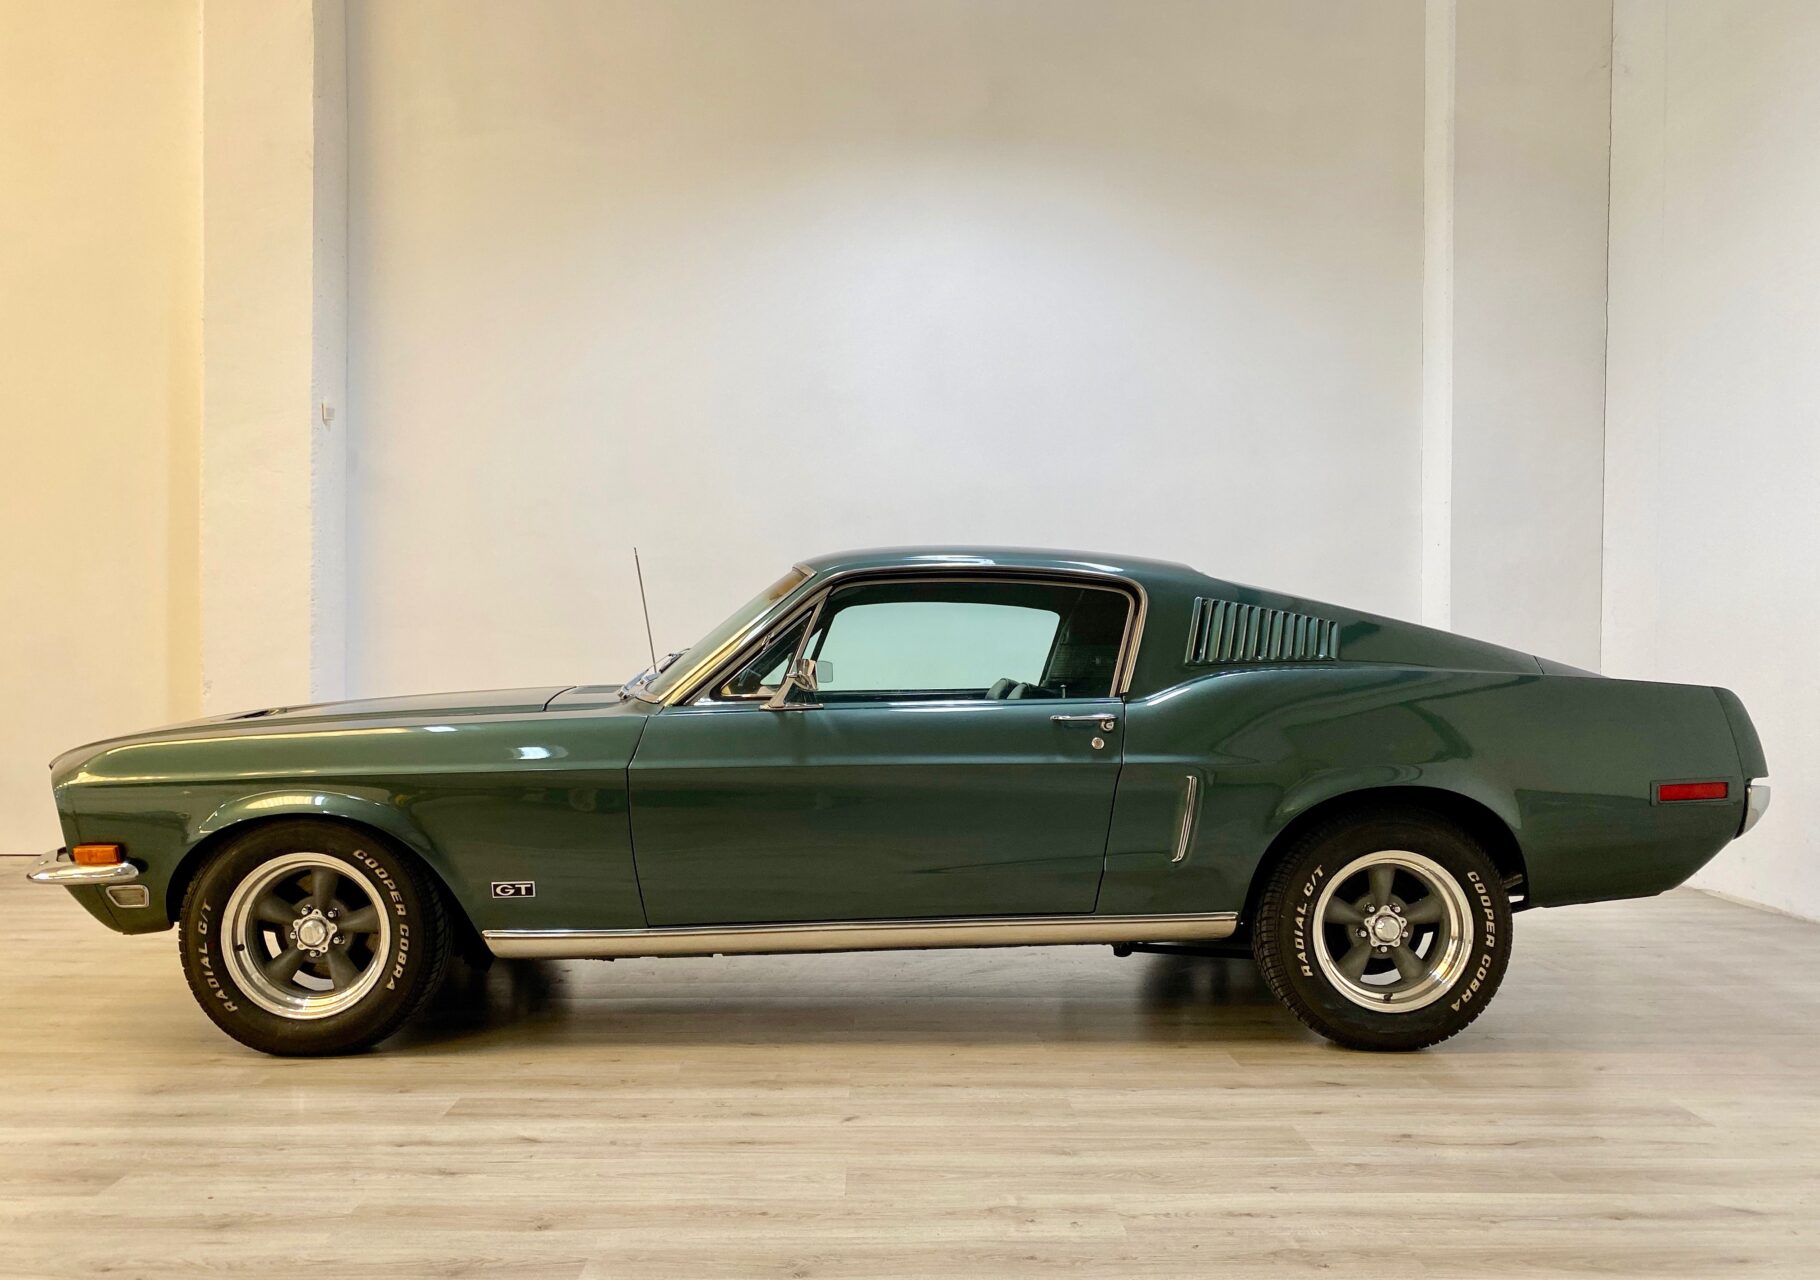 1968 Ford Mustang Fastback 390 V8 MT ^ Bullitt Tribute ^ Targa ITA